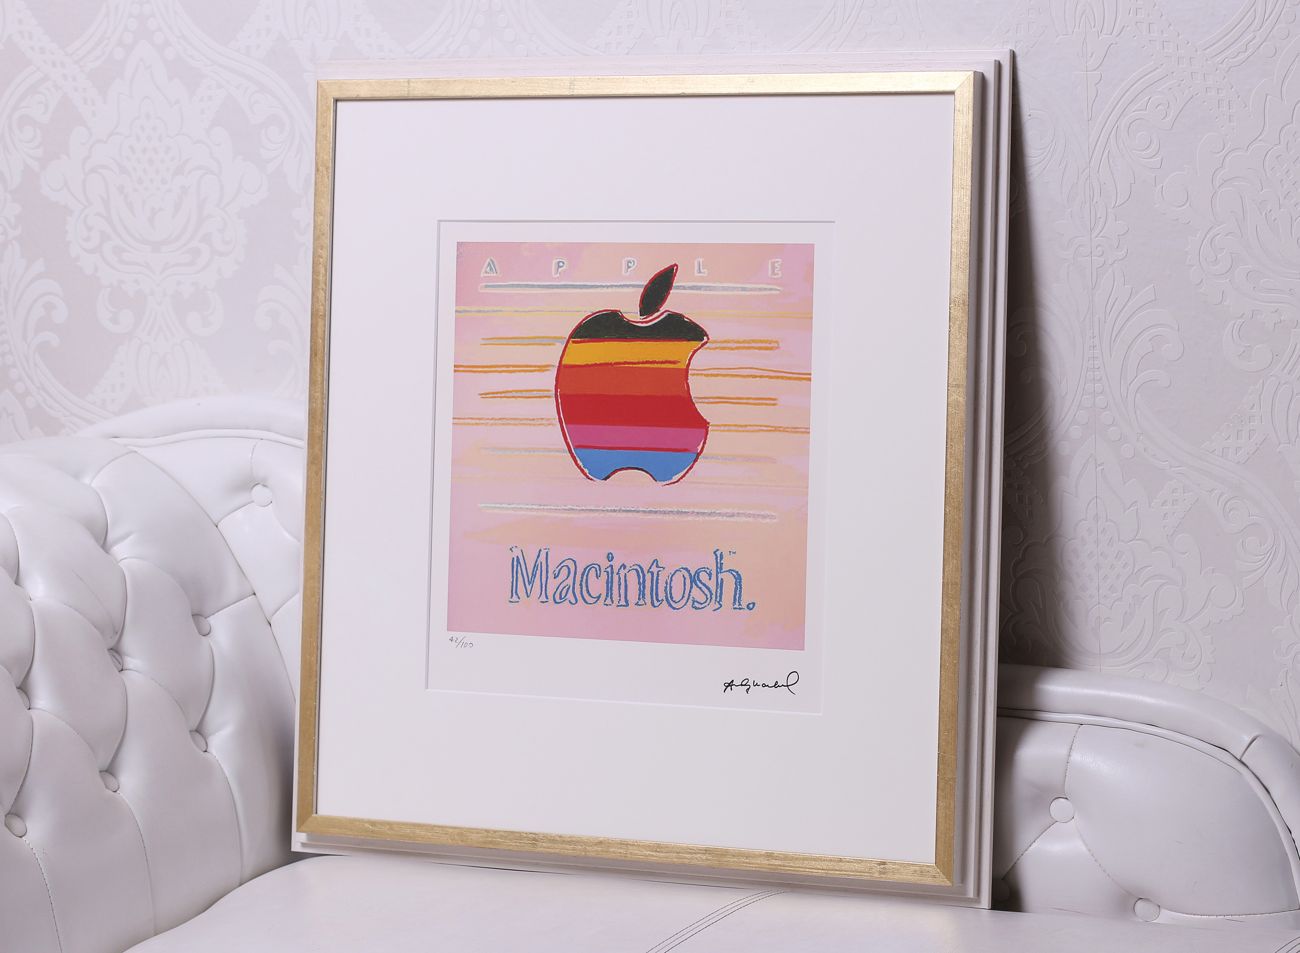 Obraz Andy Warhol, Apple (Macintosh) v bílo zlatém rámu